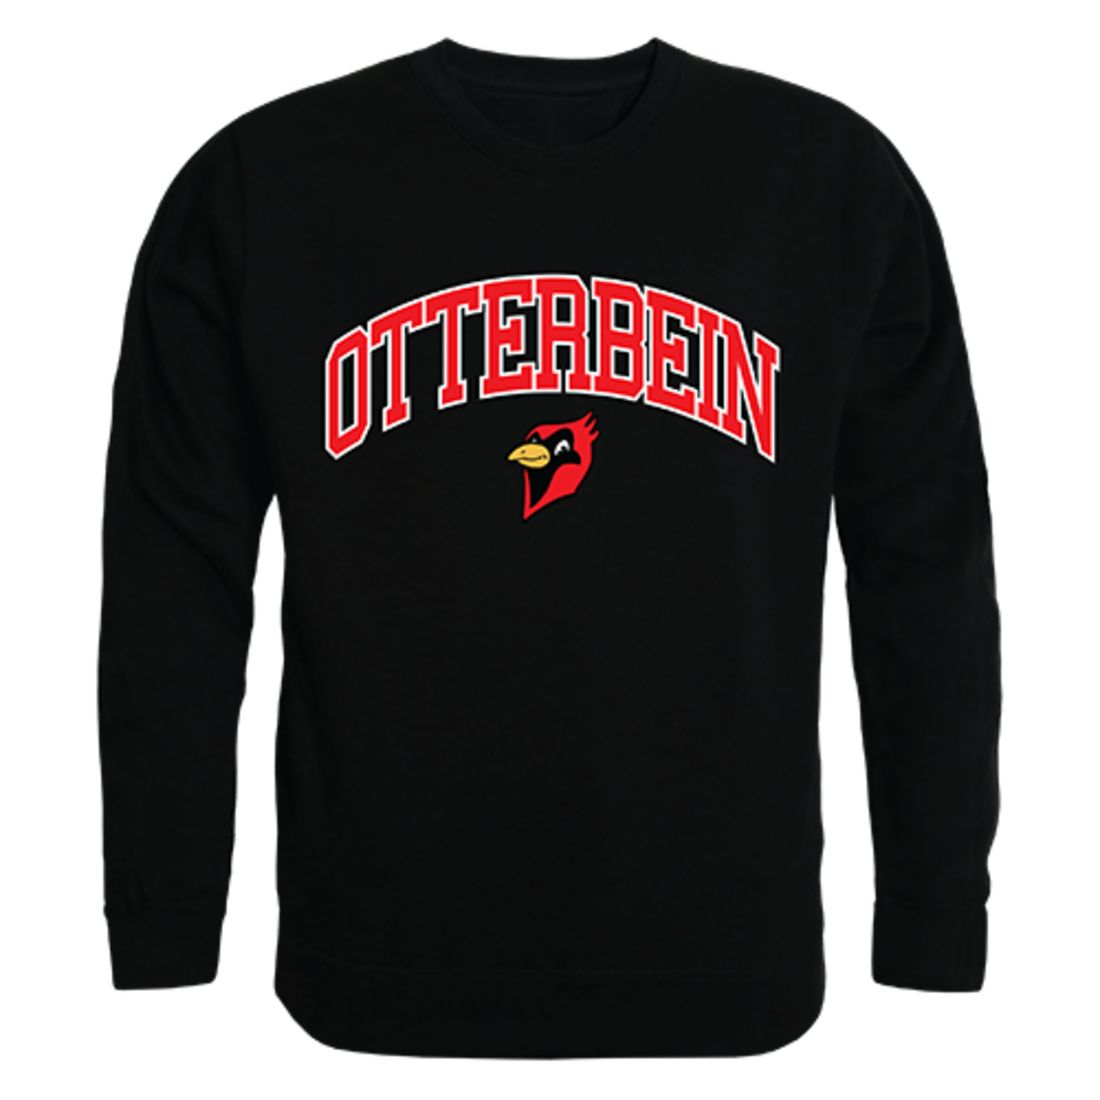 Otterbein University Campus Crewneck Pullover Sweatshirt Sweater Black-Campus-Wardrobe